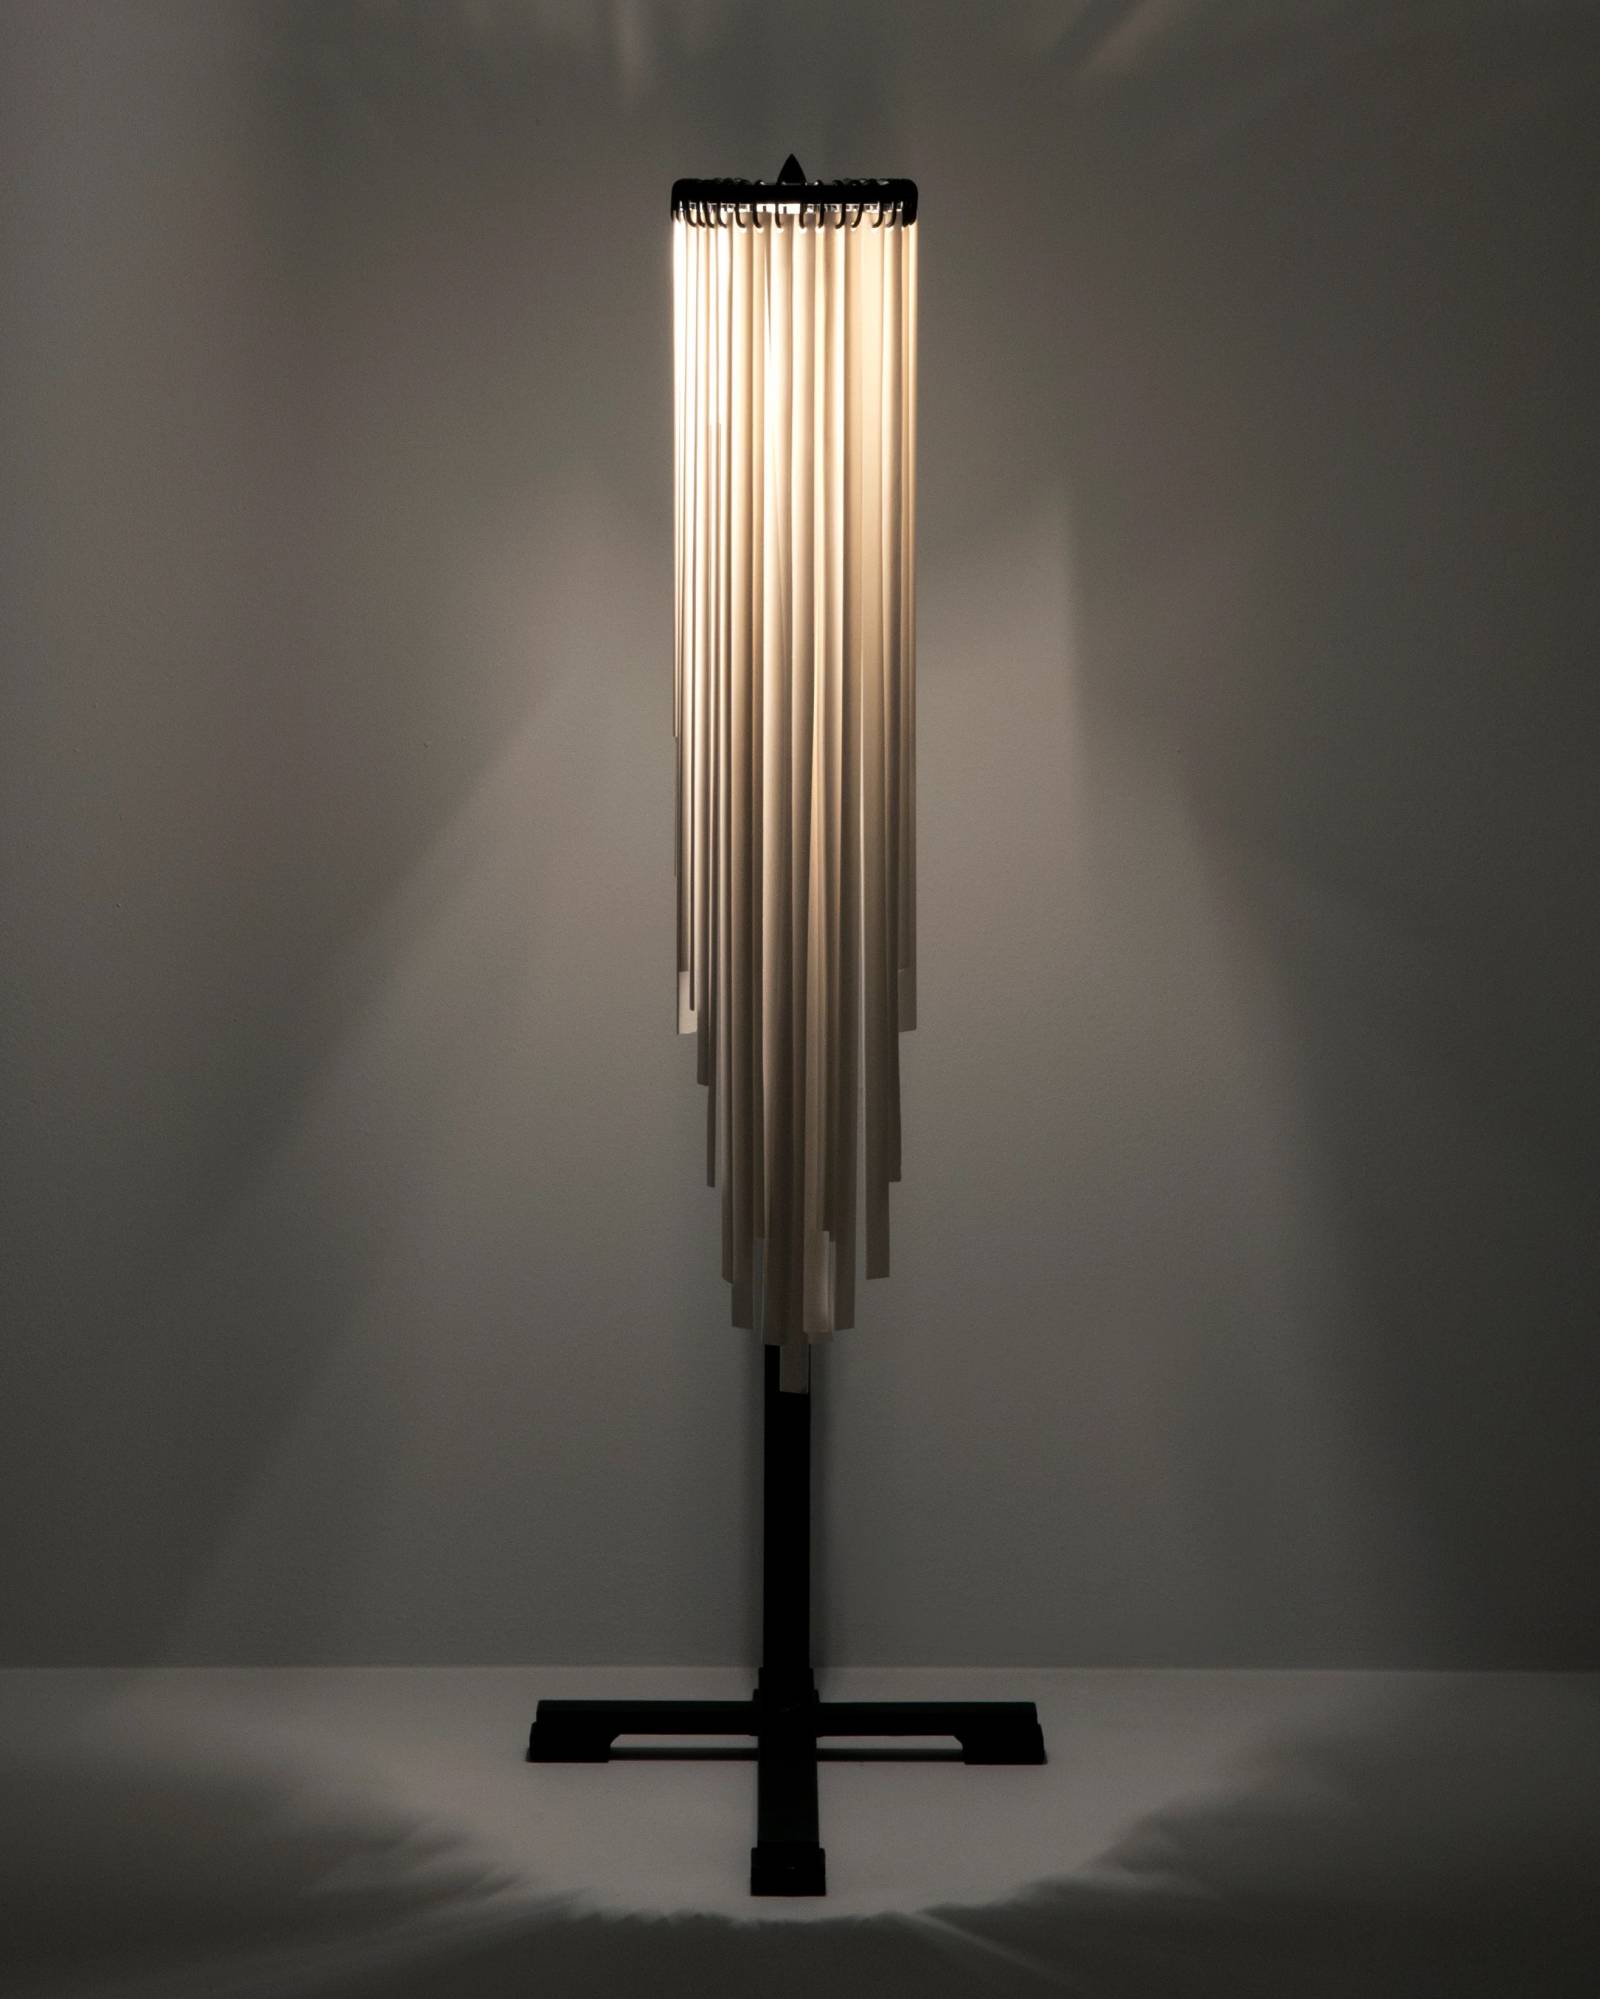 Lampka dekoracyjna projektu Ann Demeulemeester dla marki Serax to wymarzona dekoracja do salonu (Fot. materiały prasowe)